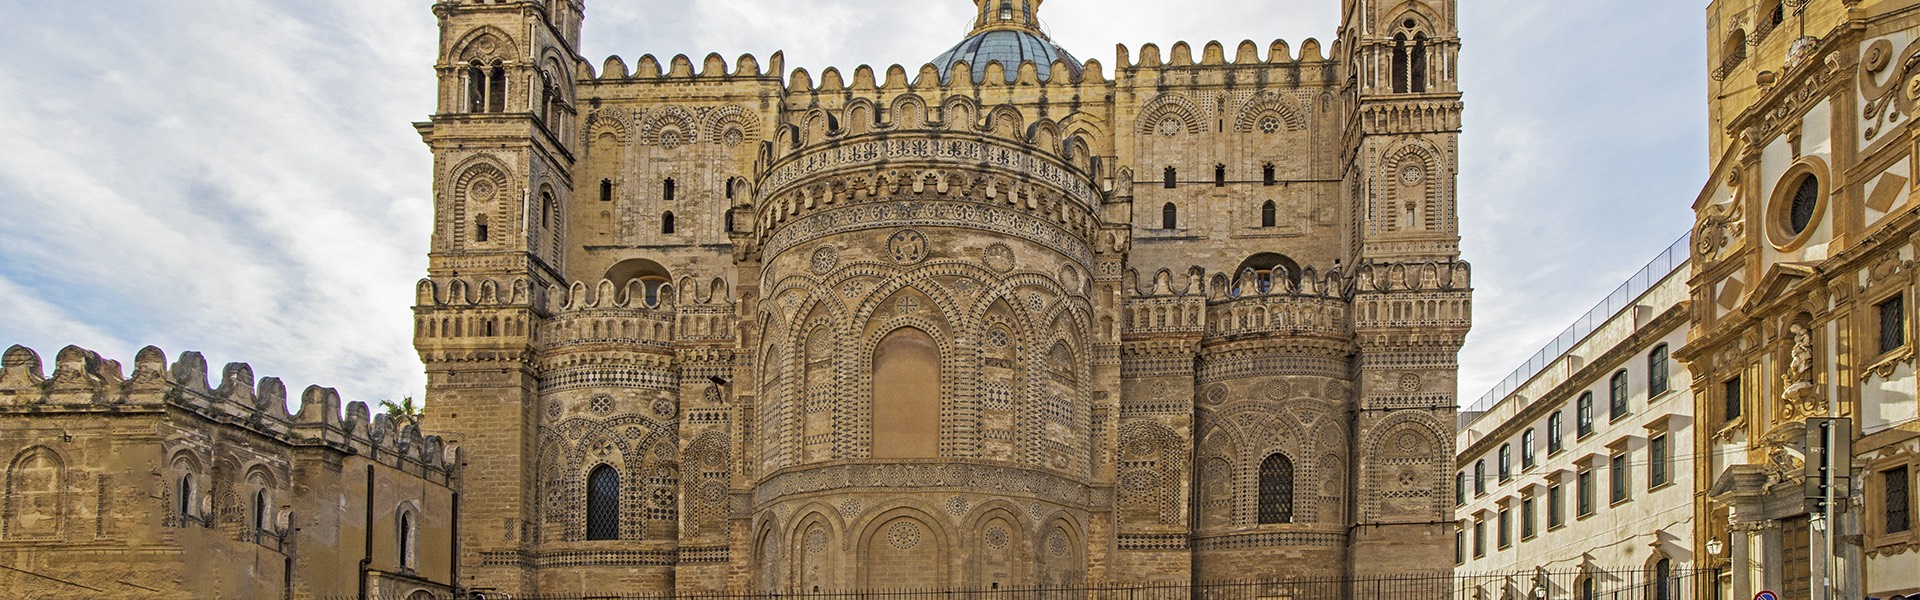 Palermo Arabo Normanna e le cattedrali di Cefalù e Monreale